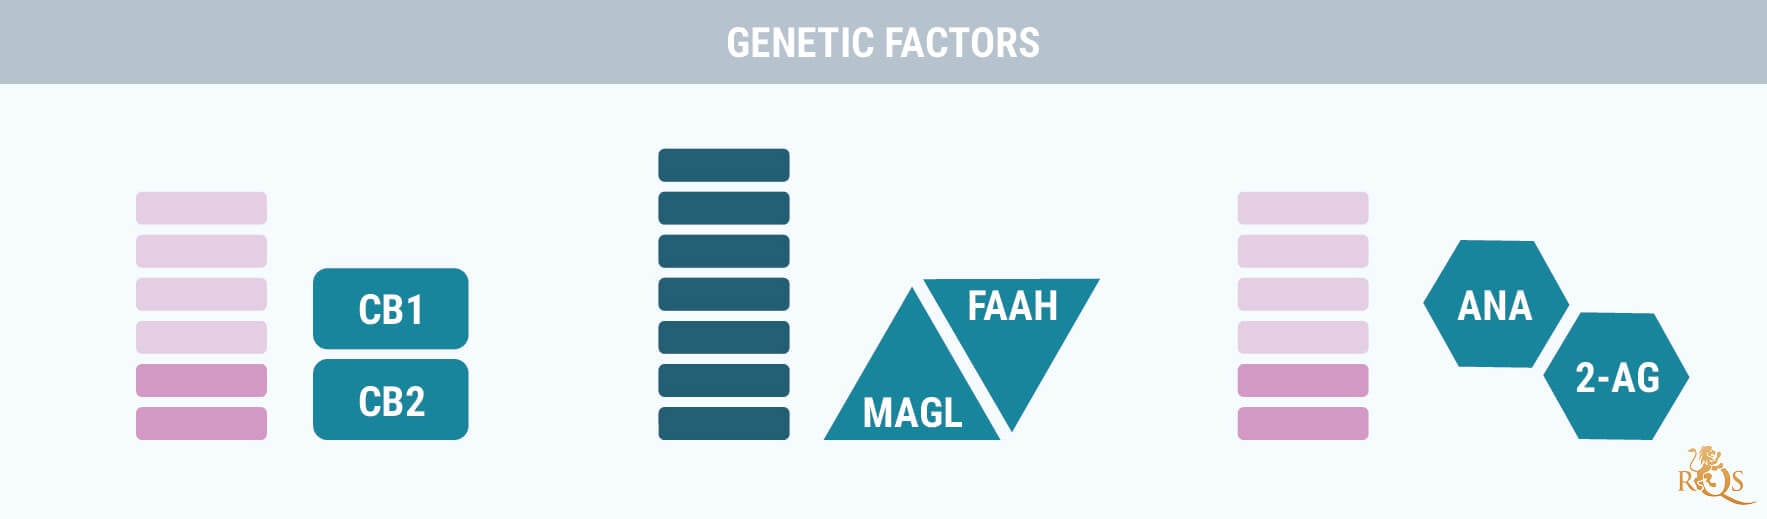 Factores genéticos